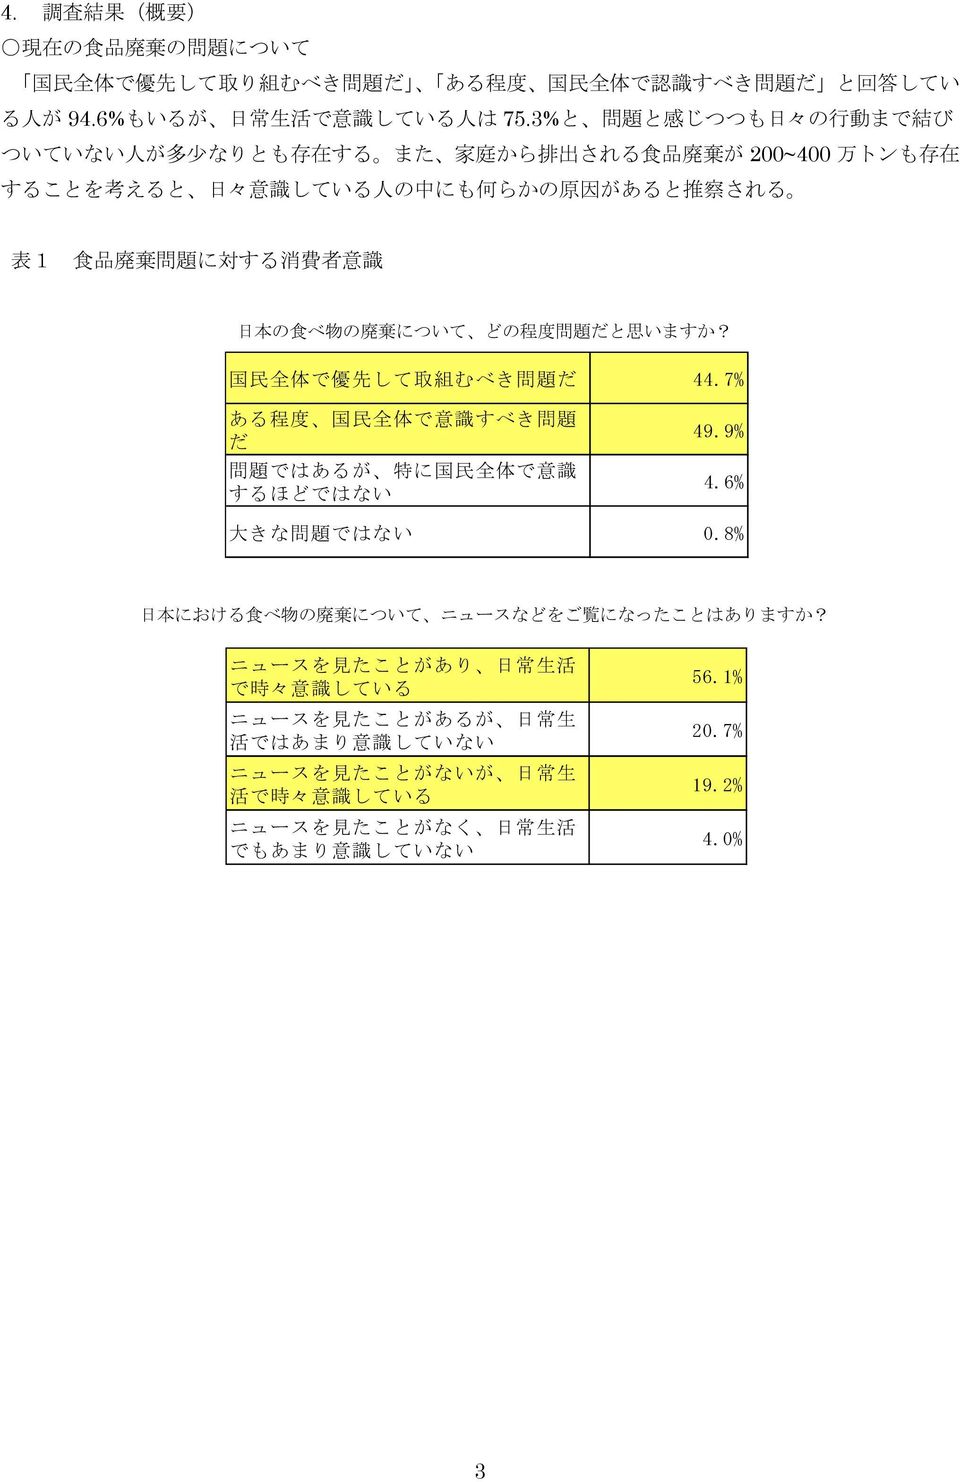 意 識 日 本 の 食 べ 物 の 廃 棄 について どの 程 度 問 題 だと 思 いますか? 国 民 全 体 で 優 先 して 取 組 むべき 問 題 だ 44.7% ある 程 度 国 民 全 体 で 意 識 すべき 問 題 だ 問 題 ではあるが 特 に 国 民 全 体 で 意 識 するほどではない 49.9% 4.6% 大 きな 問 題 ではない 0.